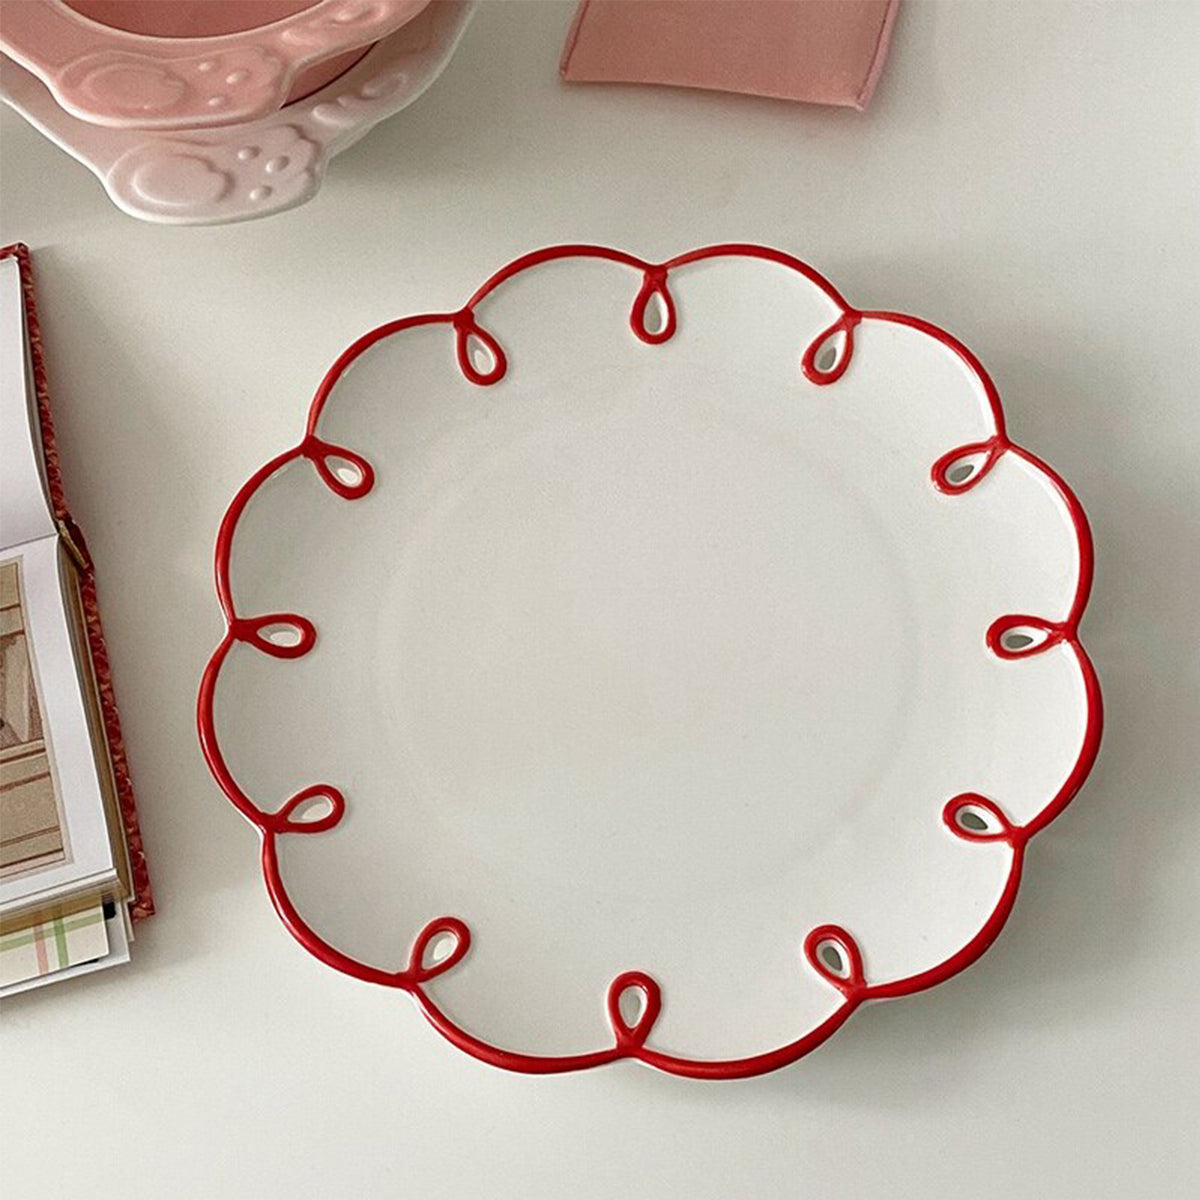 Retro Ceramic Dessert Plate